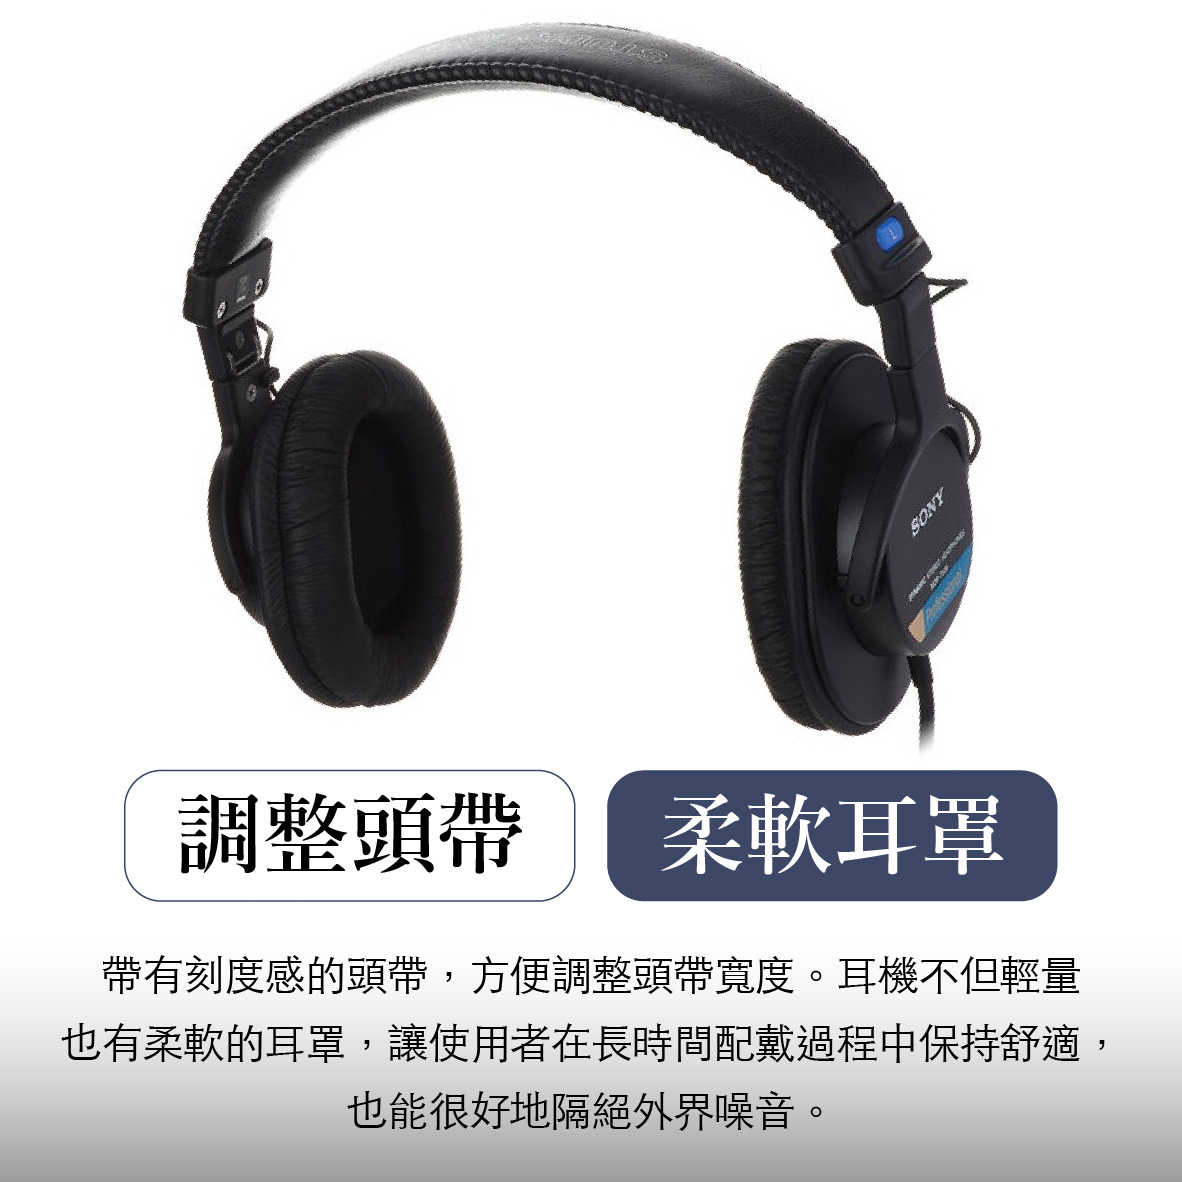 Sony 索尼 MDR-7506 專業 監聽耳機  | My Ear 耳機專門店